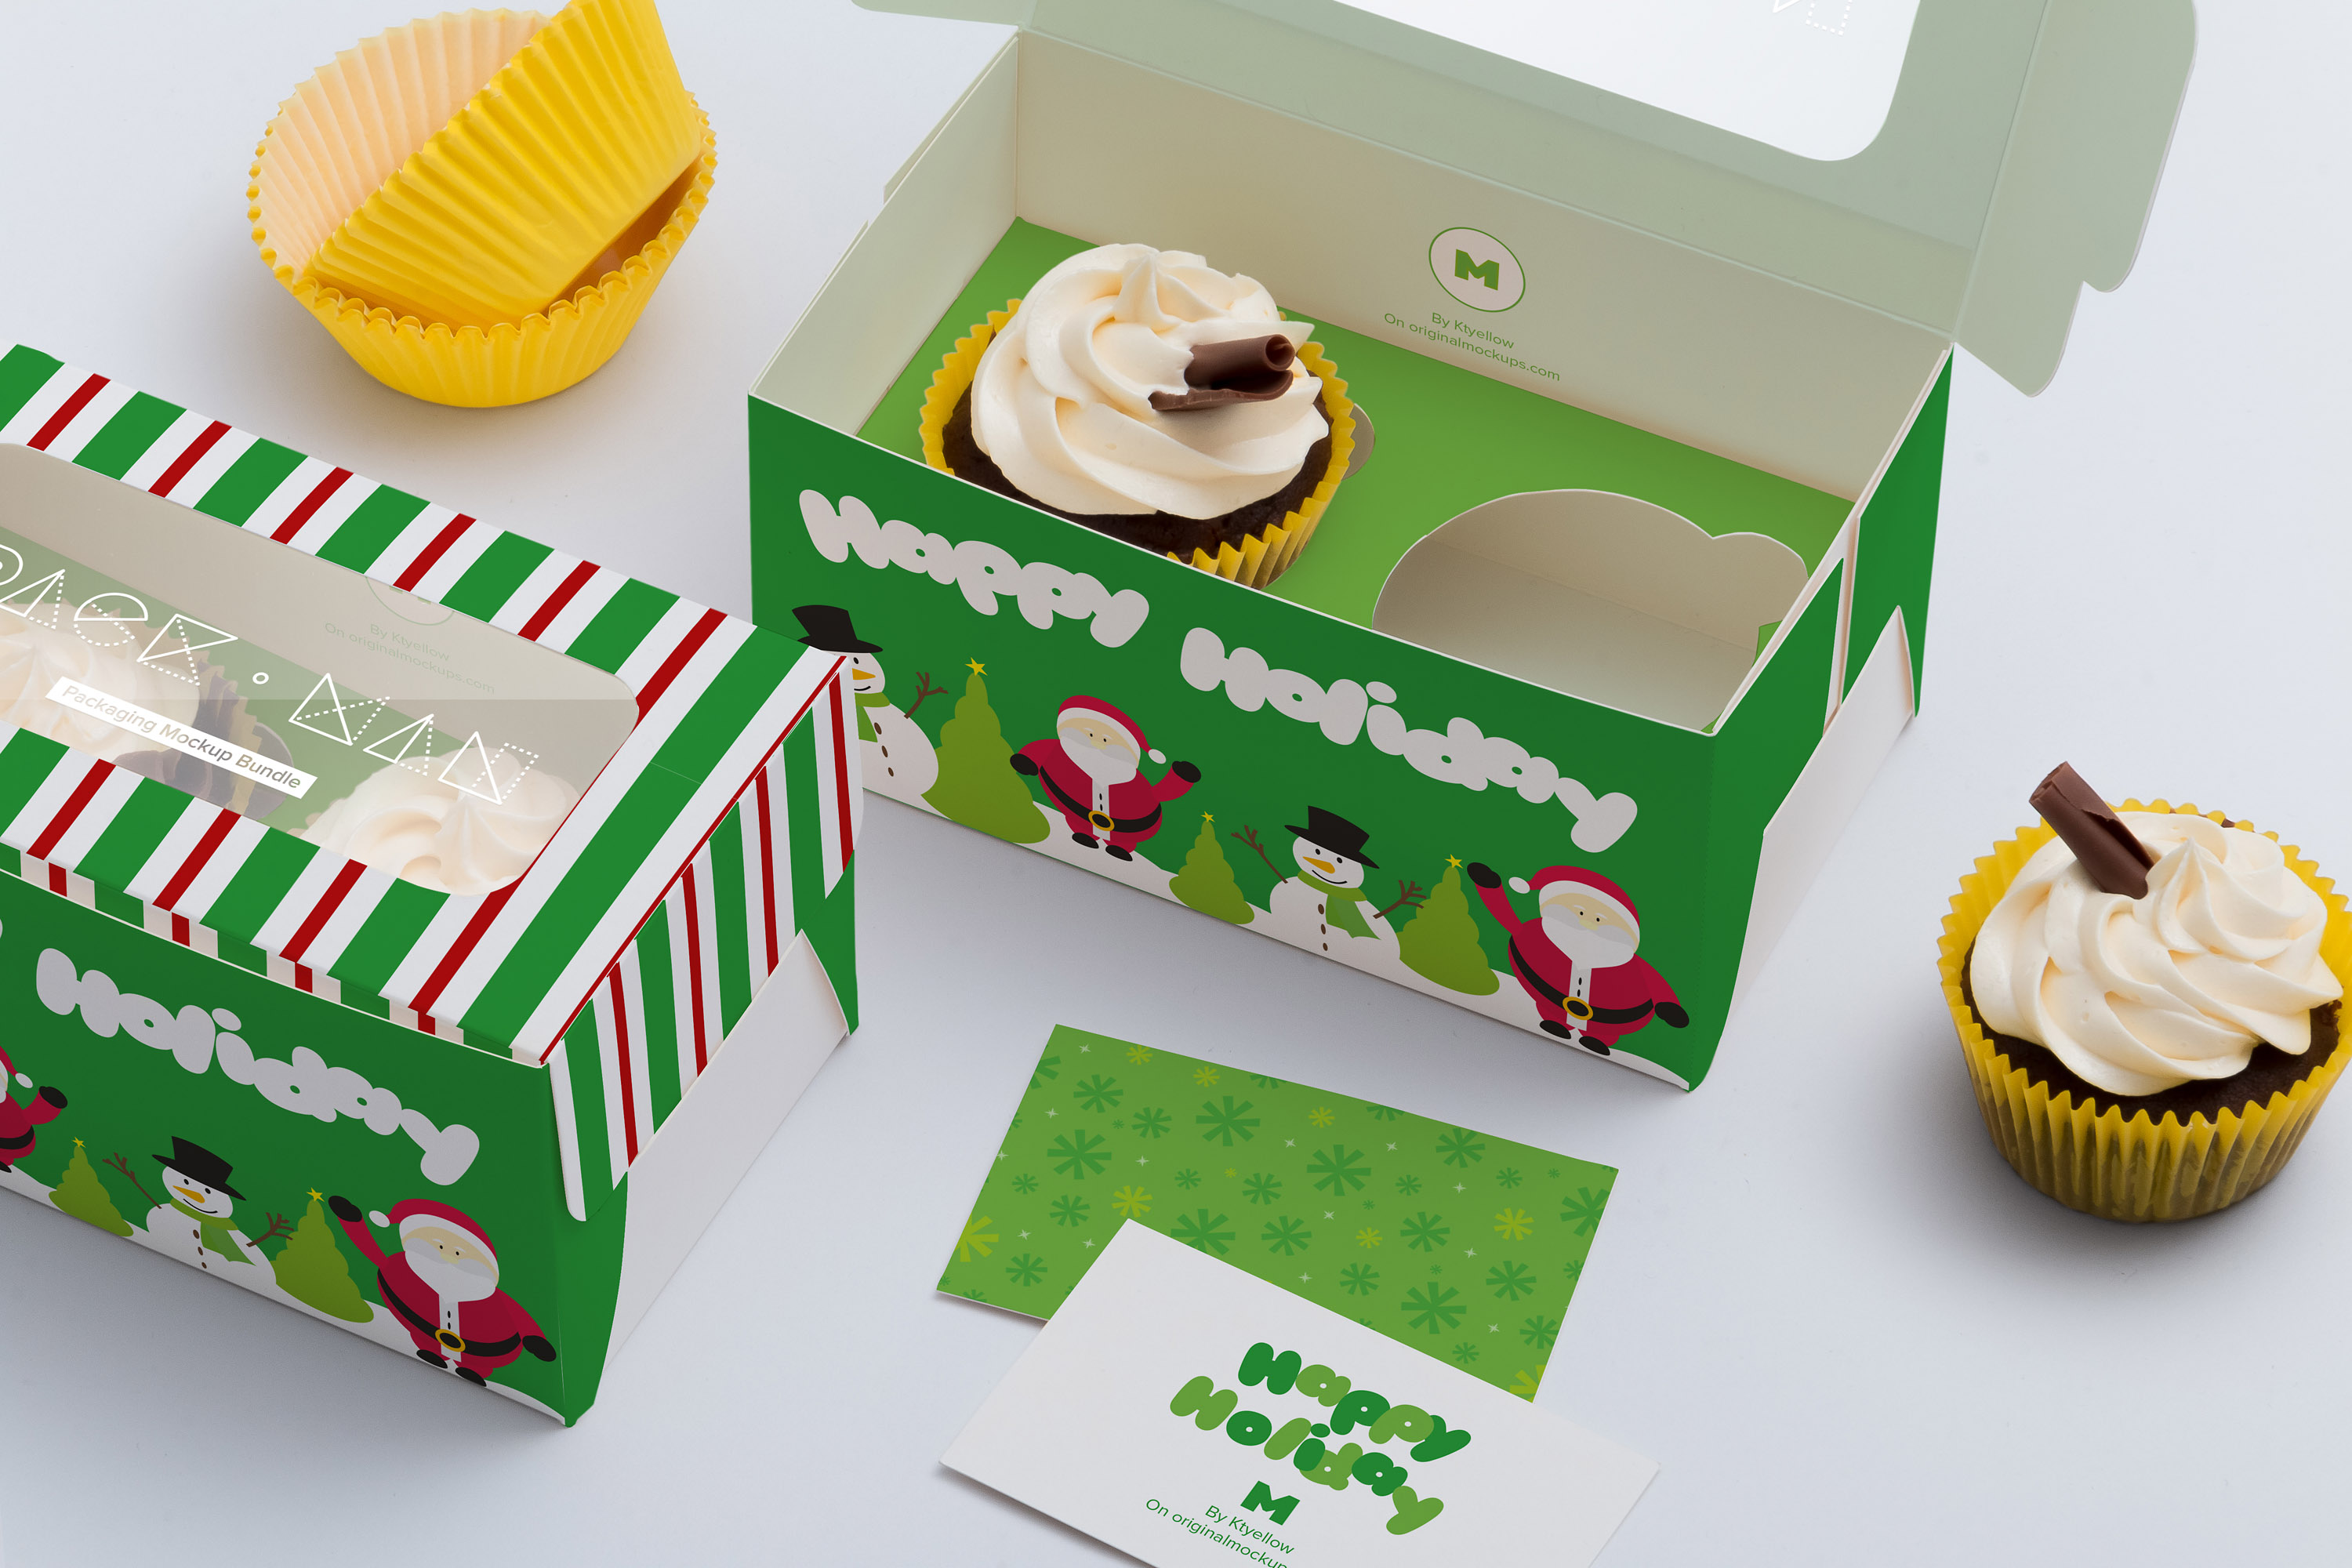 两只装纸杯蛋糕糕点包装外观设计样机模板03 Two Cupcake Box Mockup 03插图